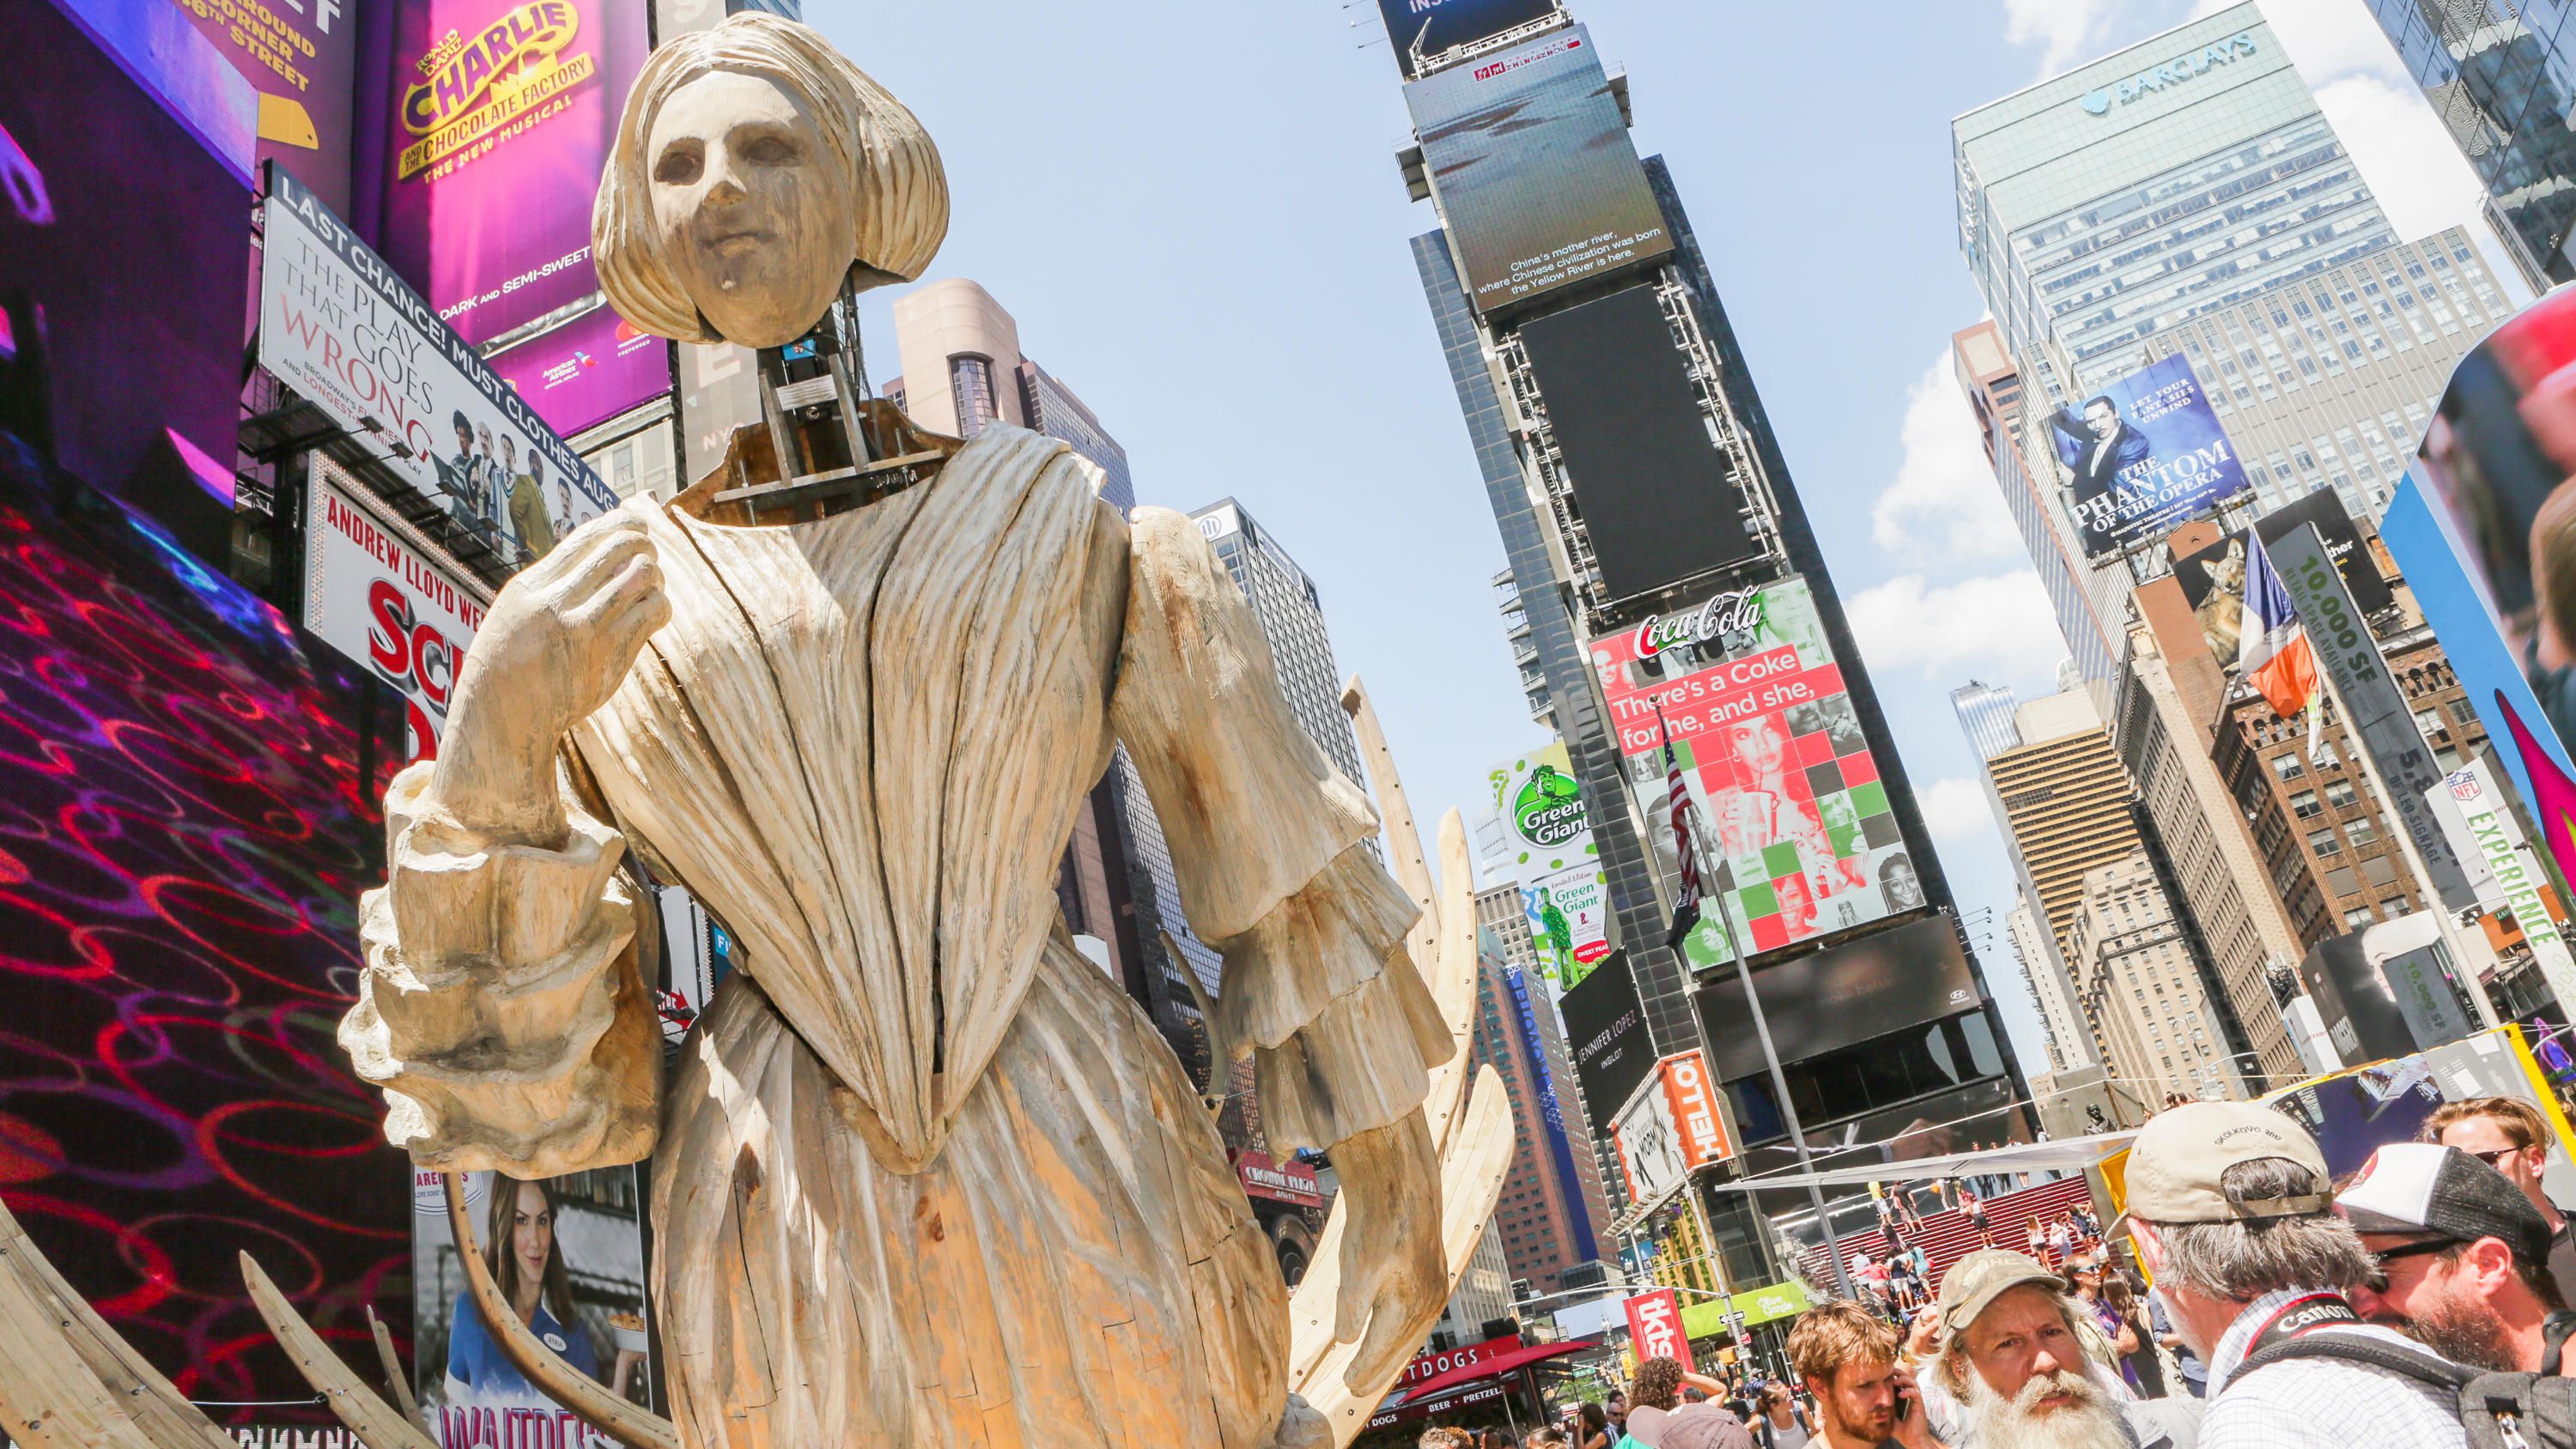 Hololens faz do Unmoored uma exposição de arte da próxima geração no meio da Times Square